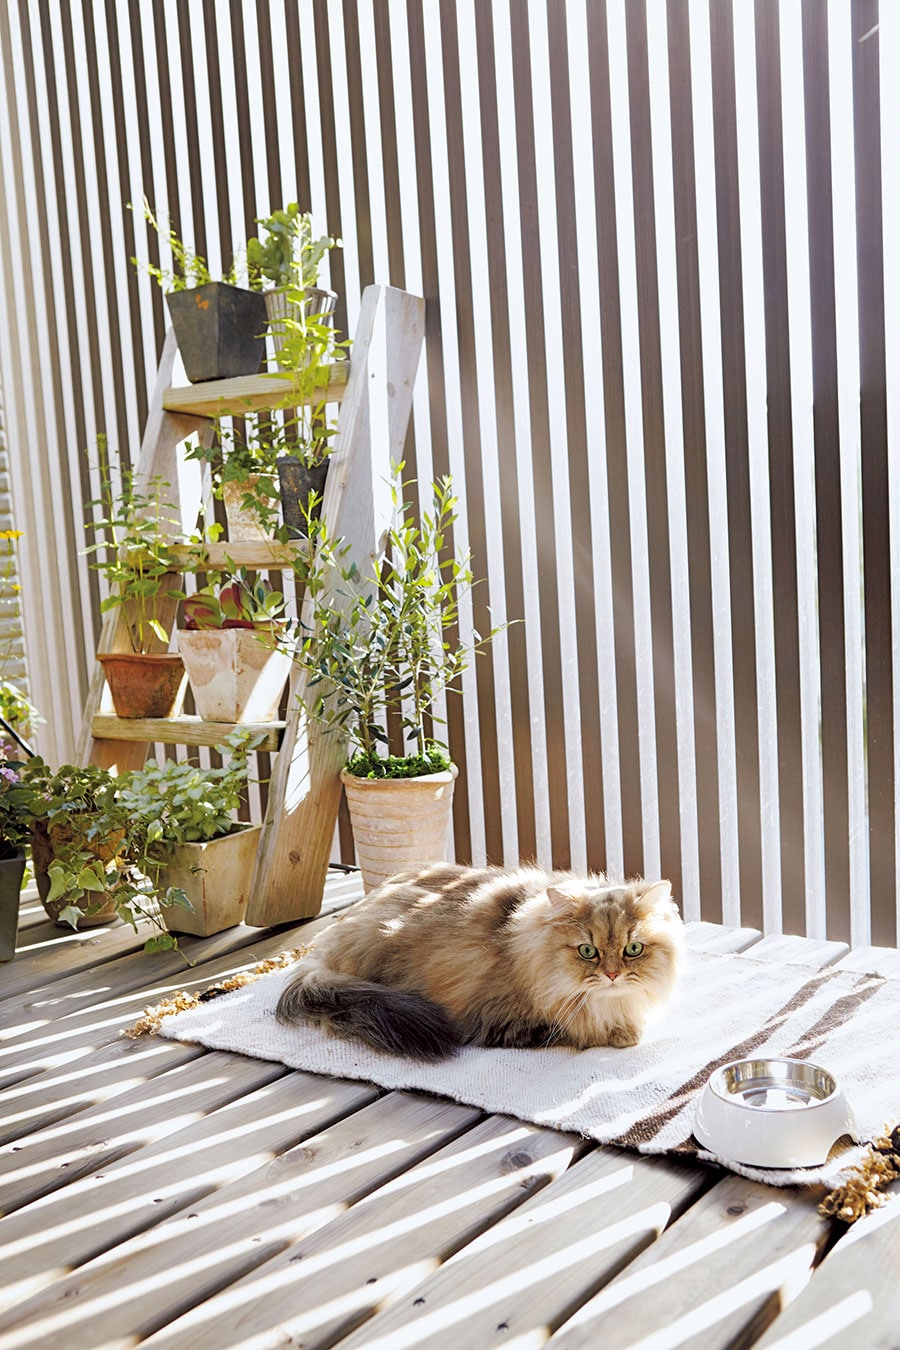 壁に囲まれた半屋外空間があれば、室内飼いの猫も屋外の心地よさを満喫できる。